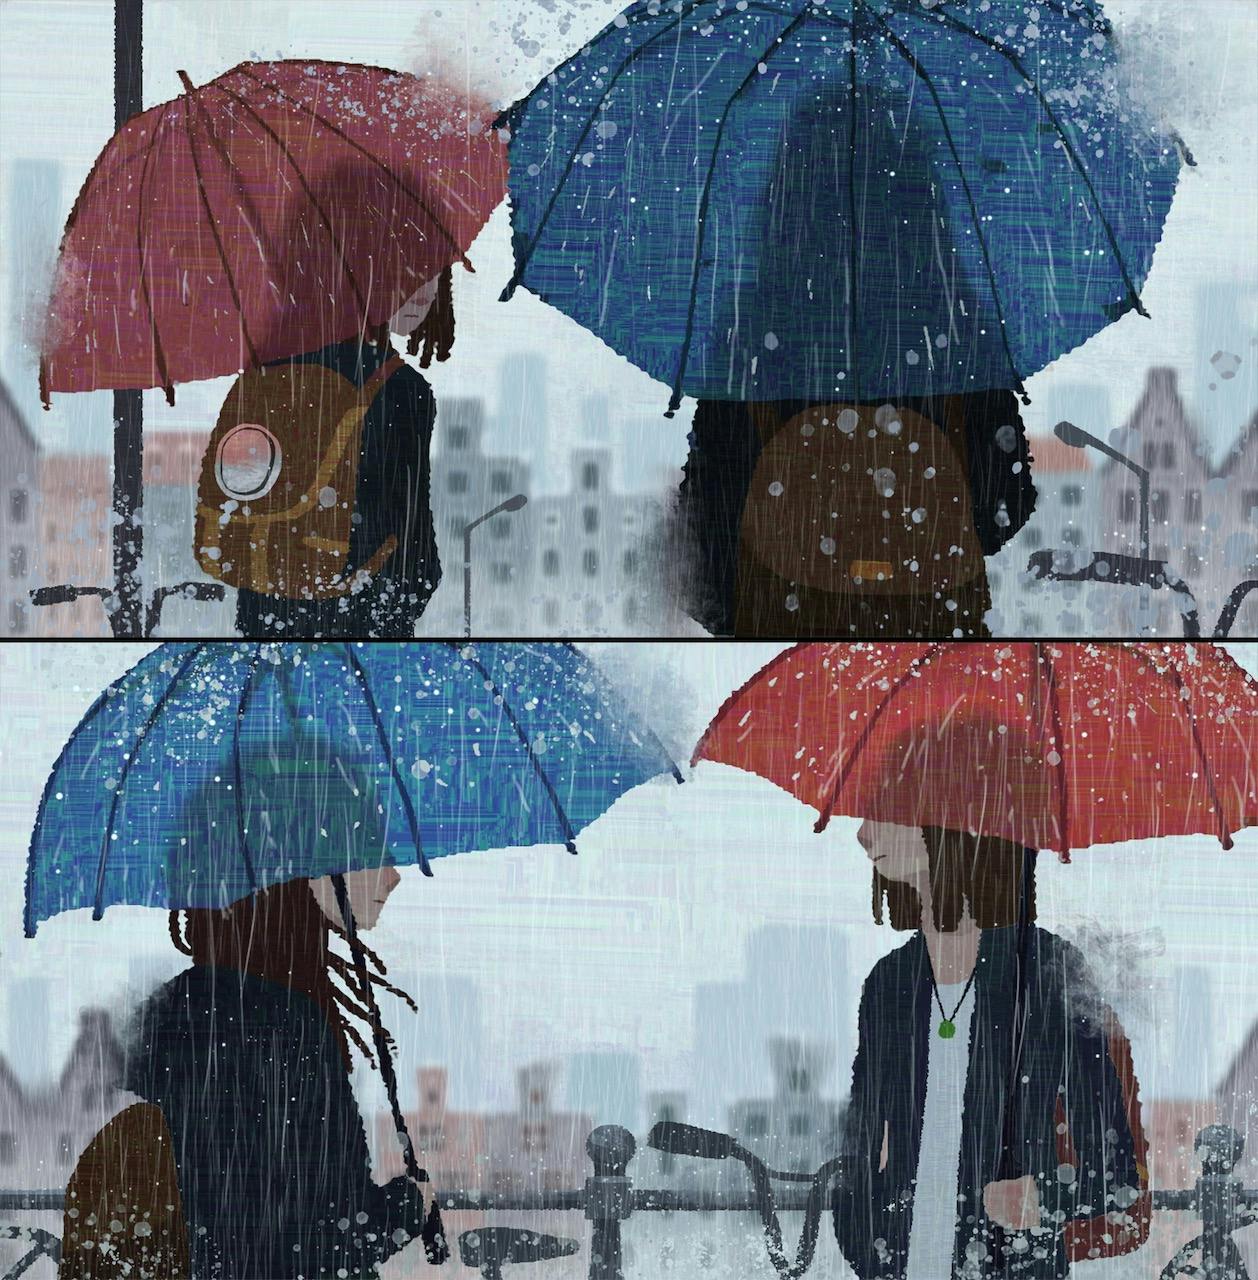 People under umbrellas, meeting